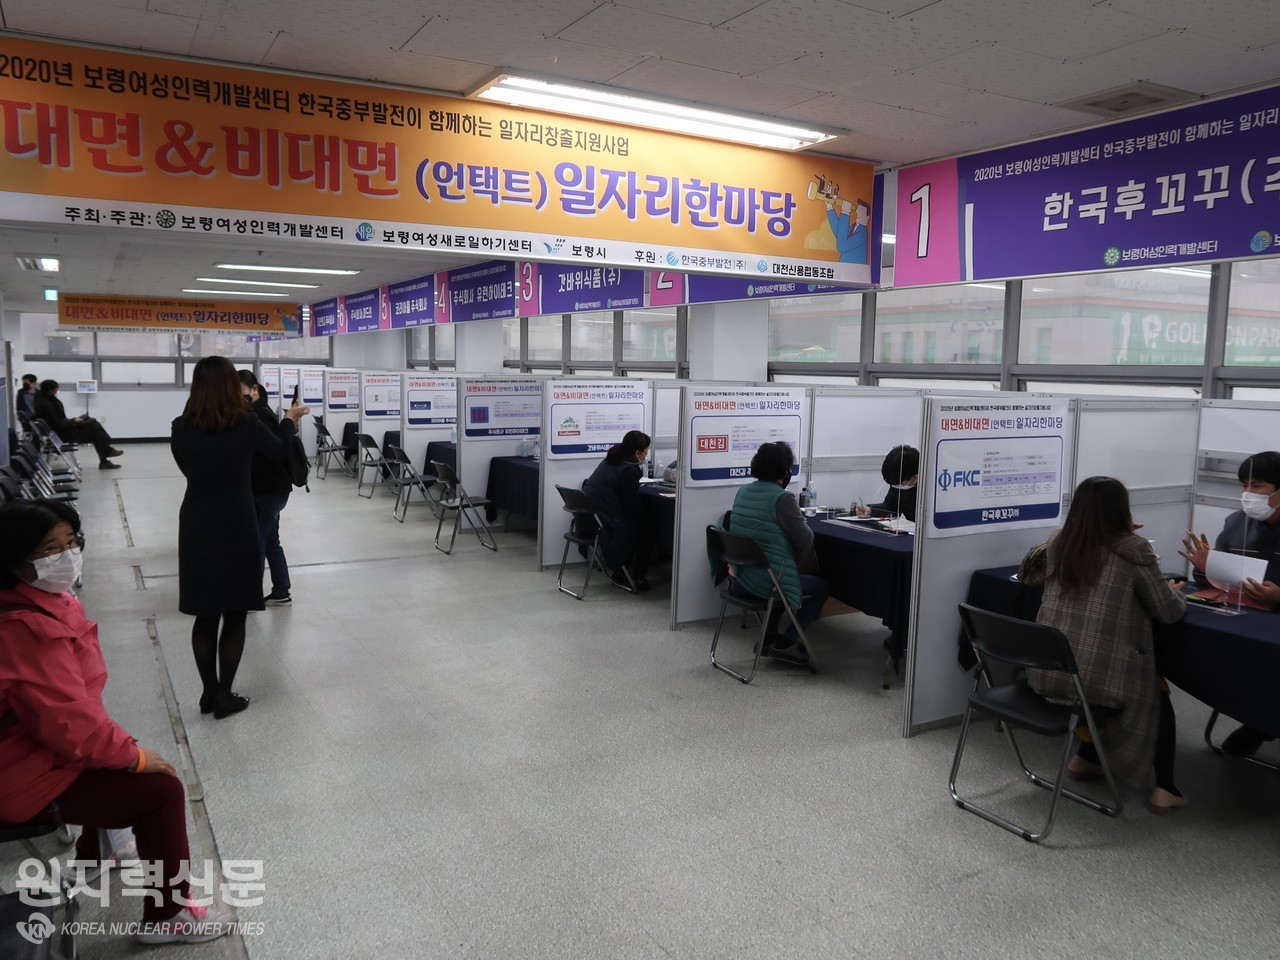 한국중부발전이 보령여성인력개발센터와 함께 17일부터 20일까지 ‘대면&비대면 일자리한마당’을 개최했다.  (사진제공 = 중부발전 홍보실)